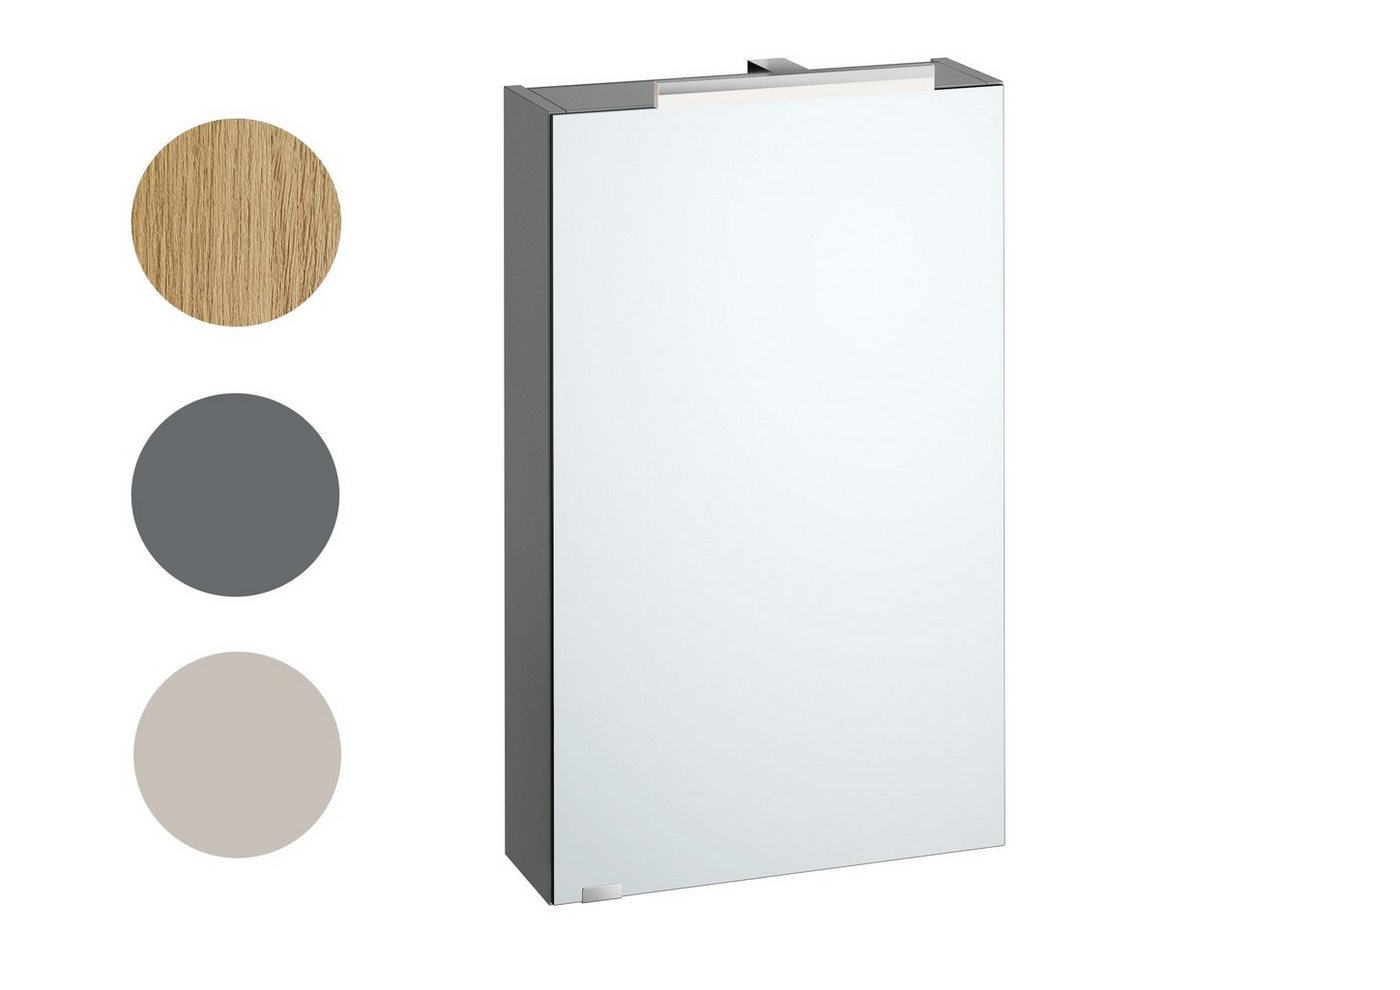 ERST-HOLZ Badmöbel-Set Badschrank Spiegelschrank mit Licht und Steckdose in 3 Farbvarianten von ERST-HOLZ